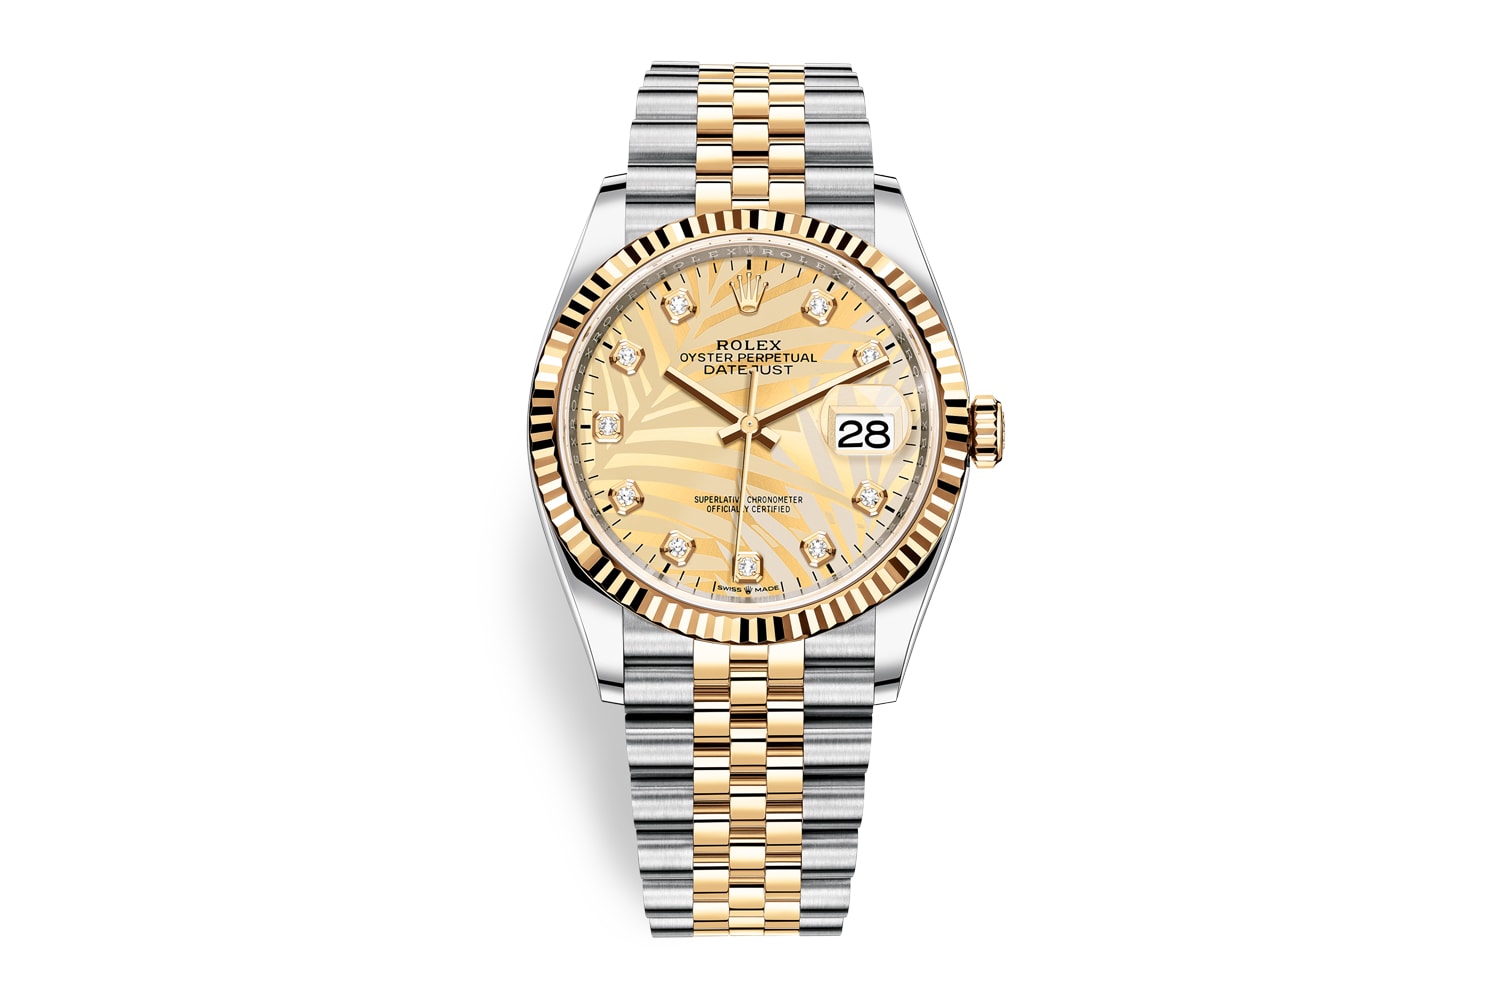 ロレックスが2022年の新作コレクションを発表 rolex accessories collectibles watches and wonders 2022 collection releases gmt master ii yacht deepsea air king datejust day date 